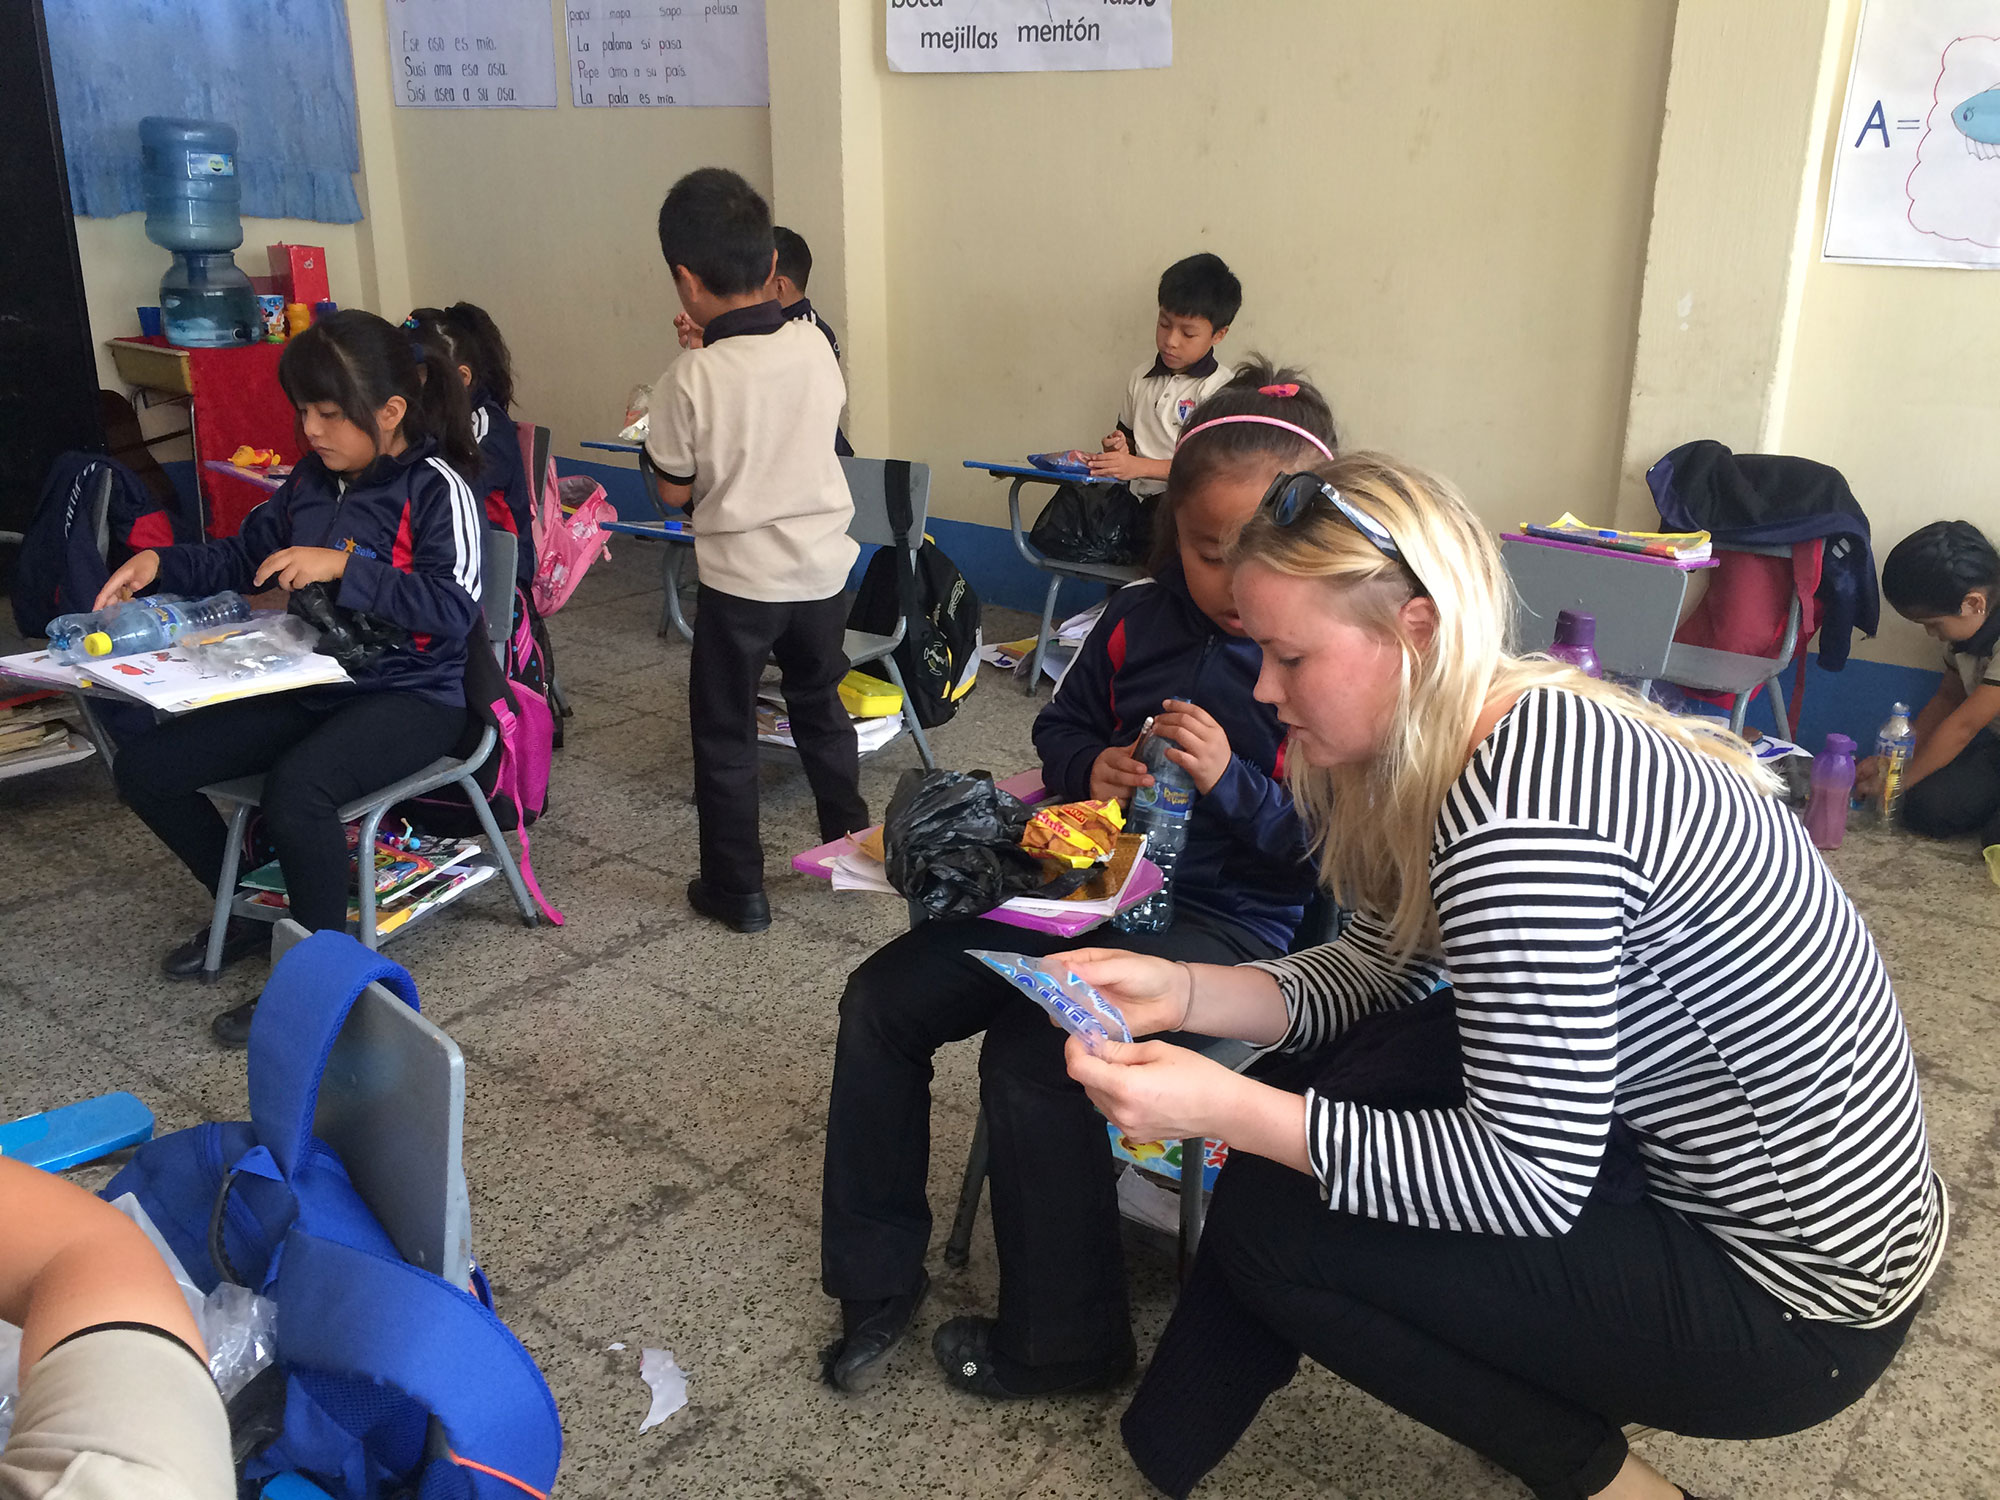 Miljöarbete i skola i Guatemala med LiU-student 2016